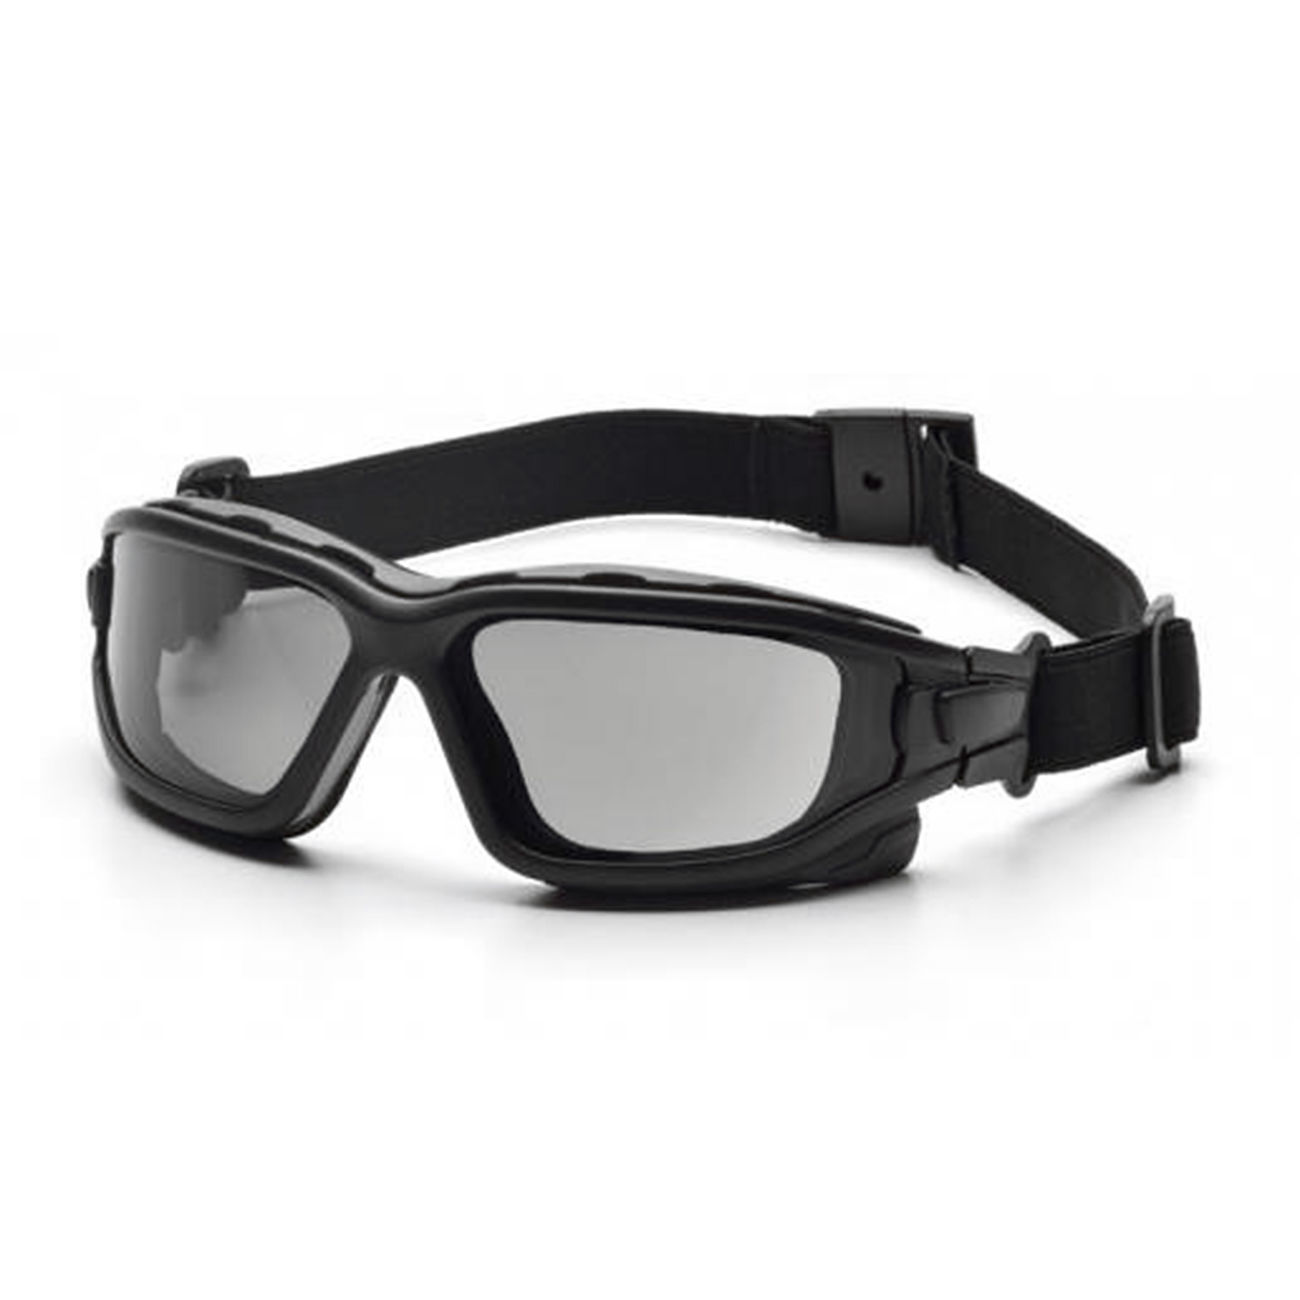 Pyramex Schutzbrille I-Force Anti-Beschlag schwarz/grau